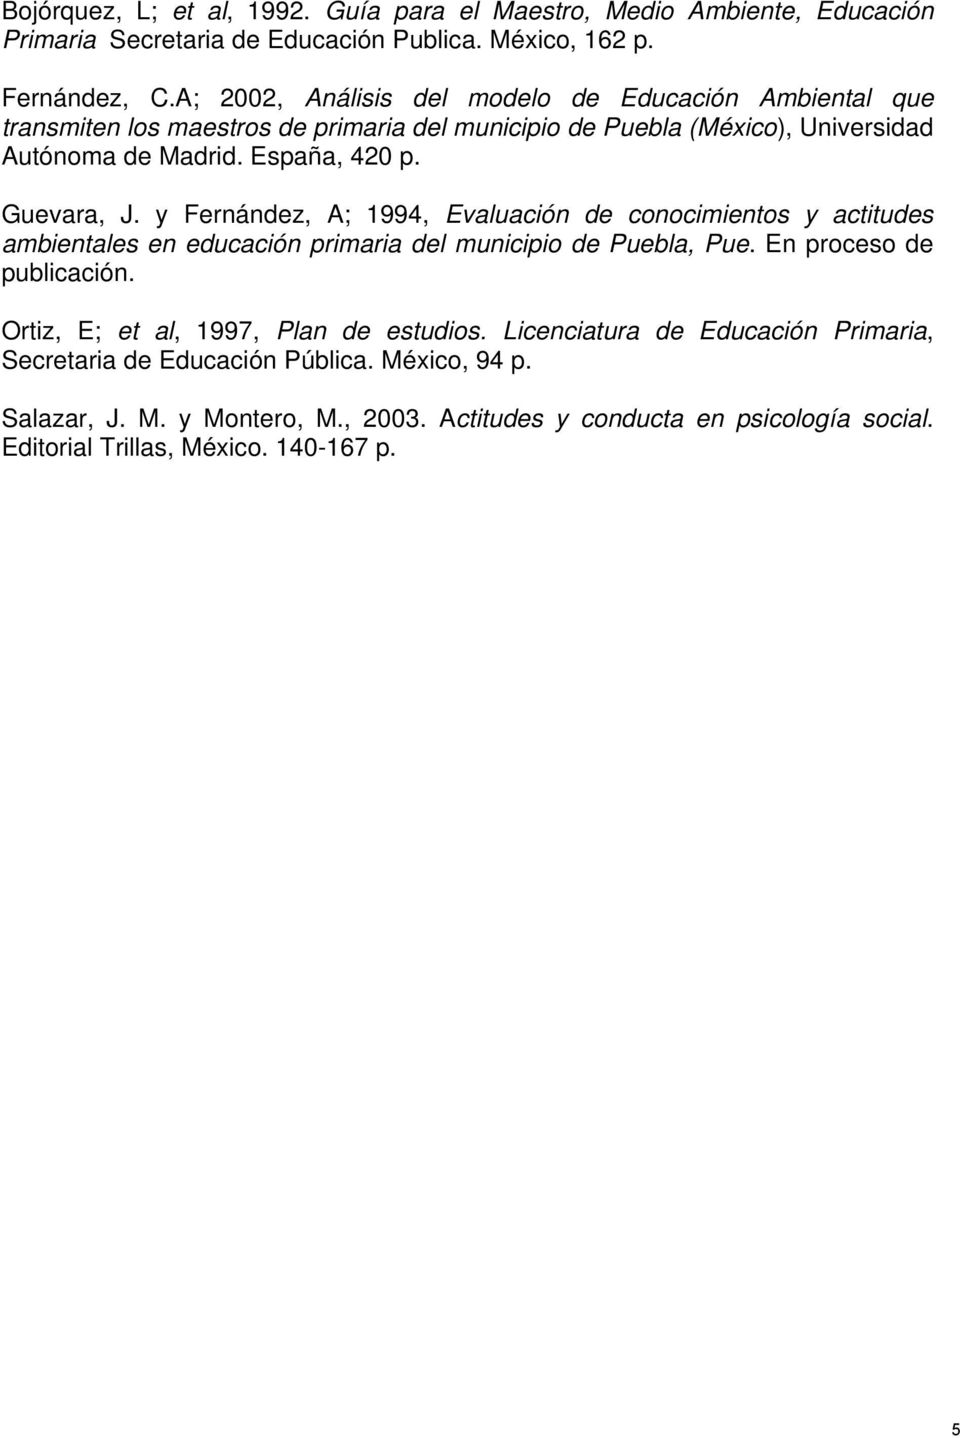 Guevara, J. y Fernández, A; 1994, Evaluación de conocimientos y actitudes ambientales en educación primaria del municipio de Puebla, Pue. En proceso de publicación.